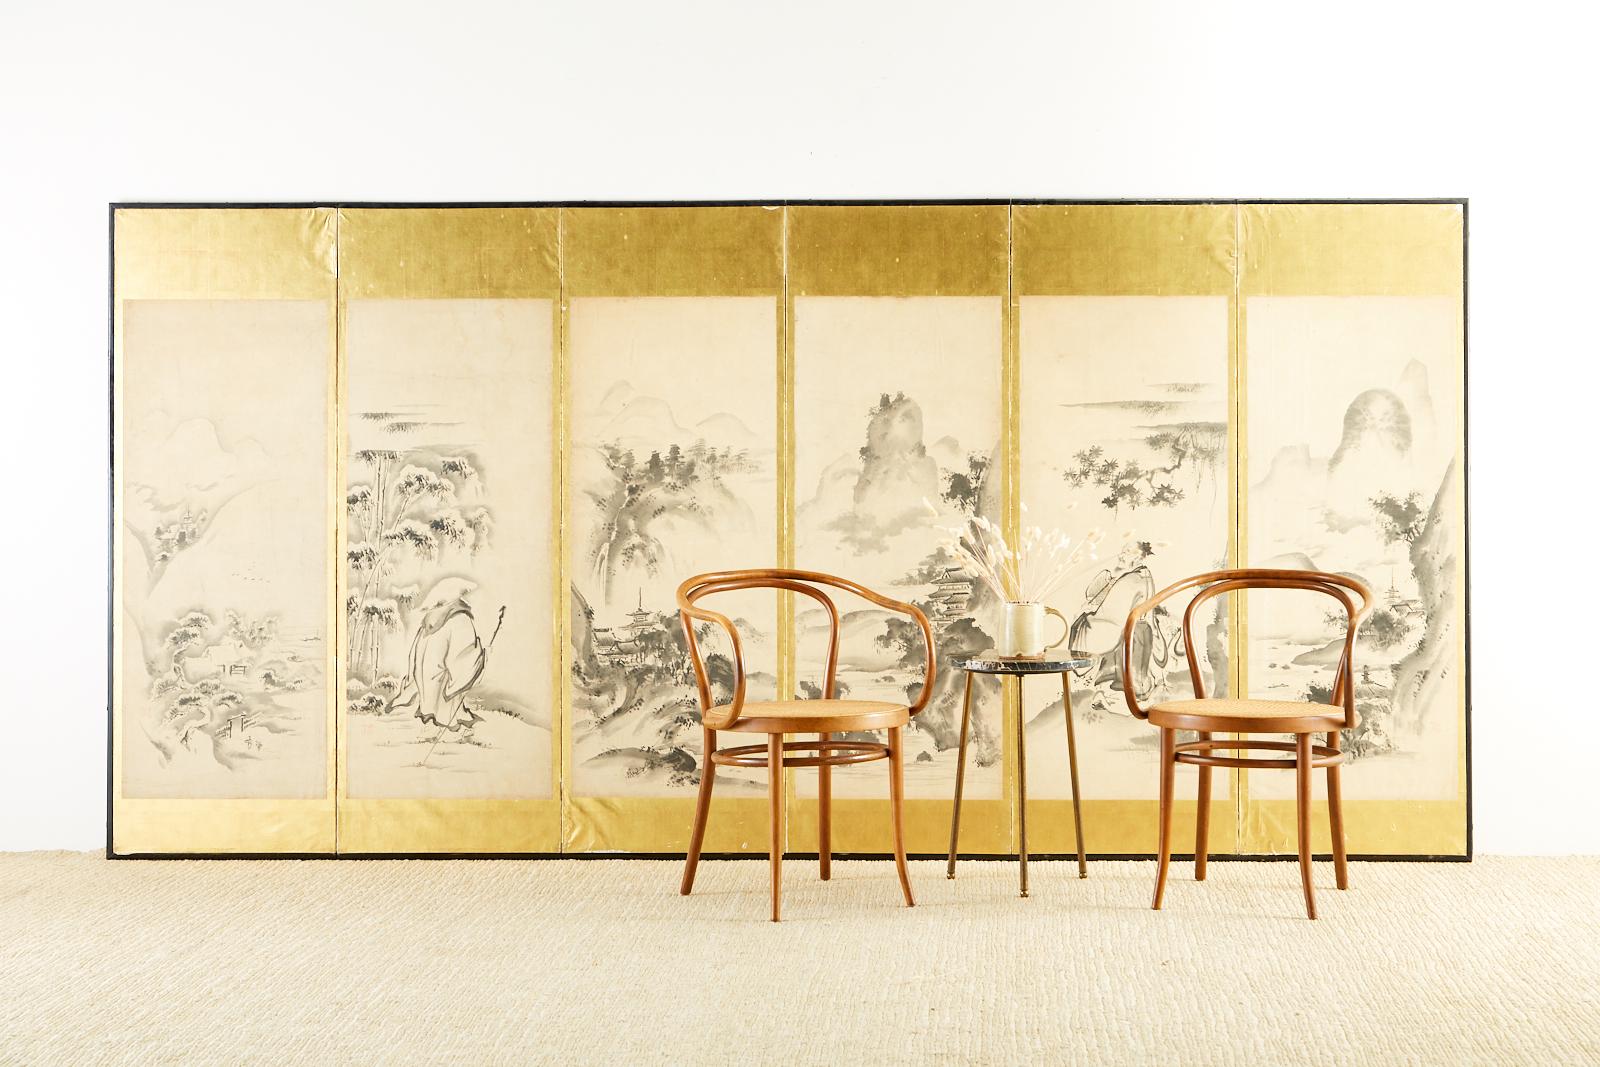 japanischer Paravent aus der Edo-Periode des 19. Jahrhunderts mit sechs Tafeln, gemalt im Haboku-Stil (Tuschspritzer). Dargestellt sind Landschaftsszenen der Vier Jahreszeiten mit zwei Porträts chinesischer Weisen. Ein Weiser ist im Schnee